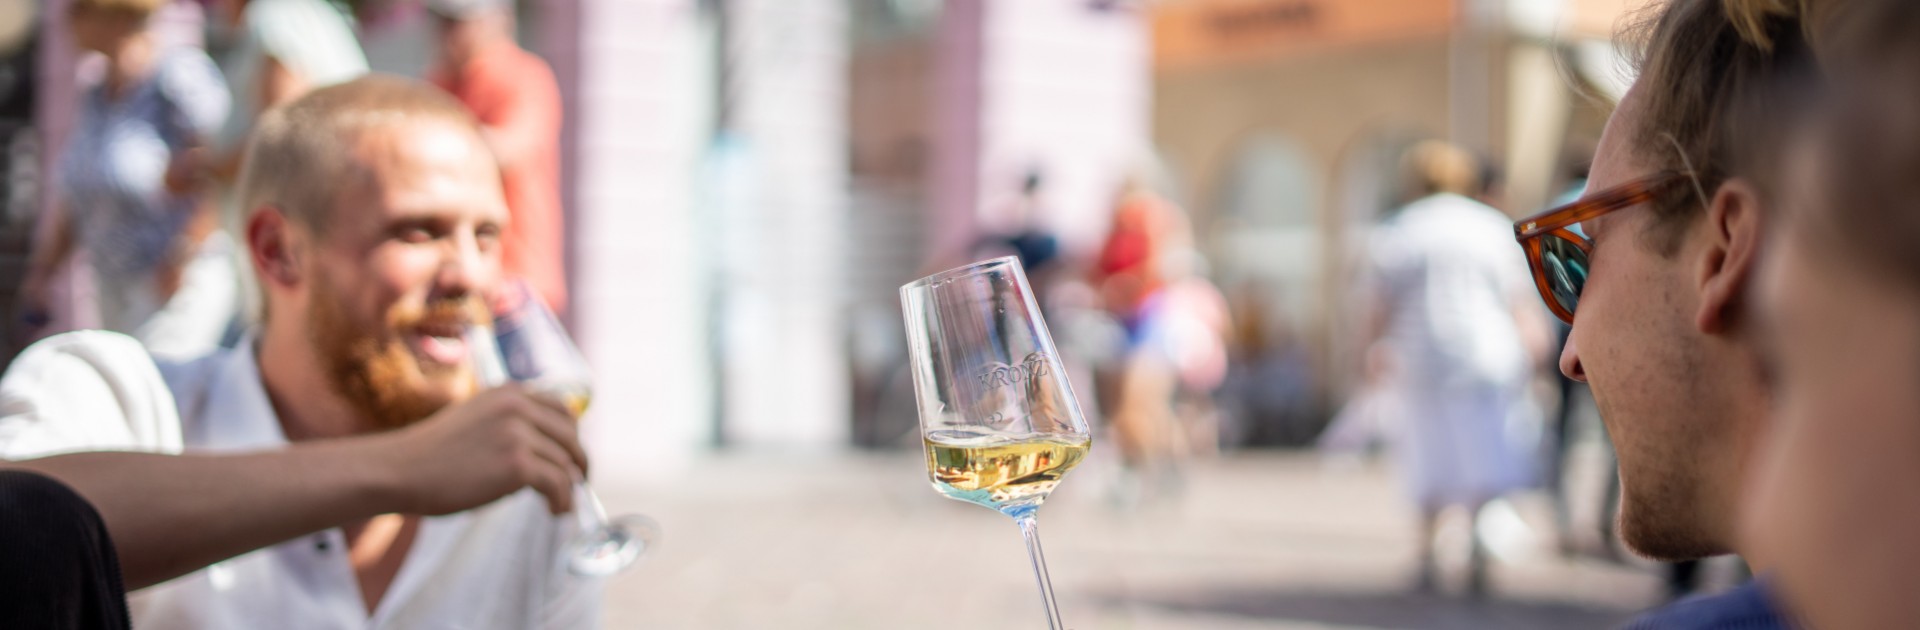 Junge Menschen sitzen zusammen und trinken Weißwein - © Crastulo Media / Trier Tourismus und Marketing GmbH